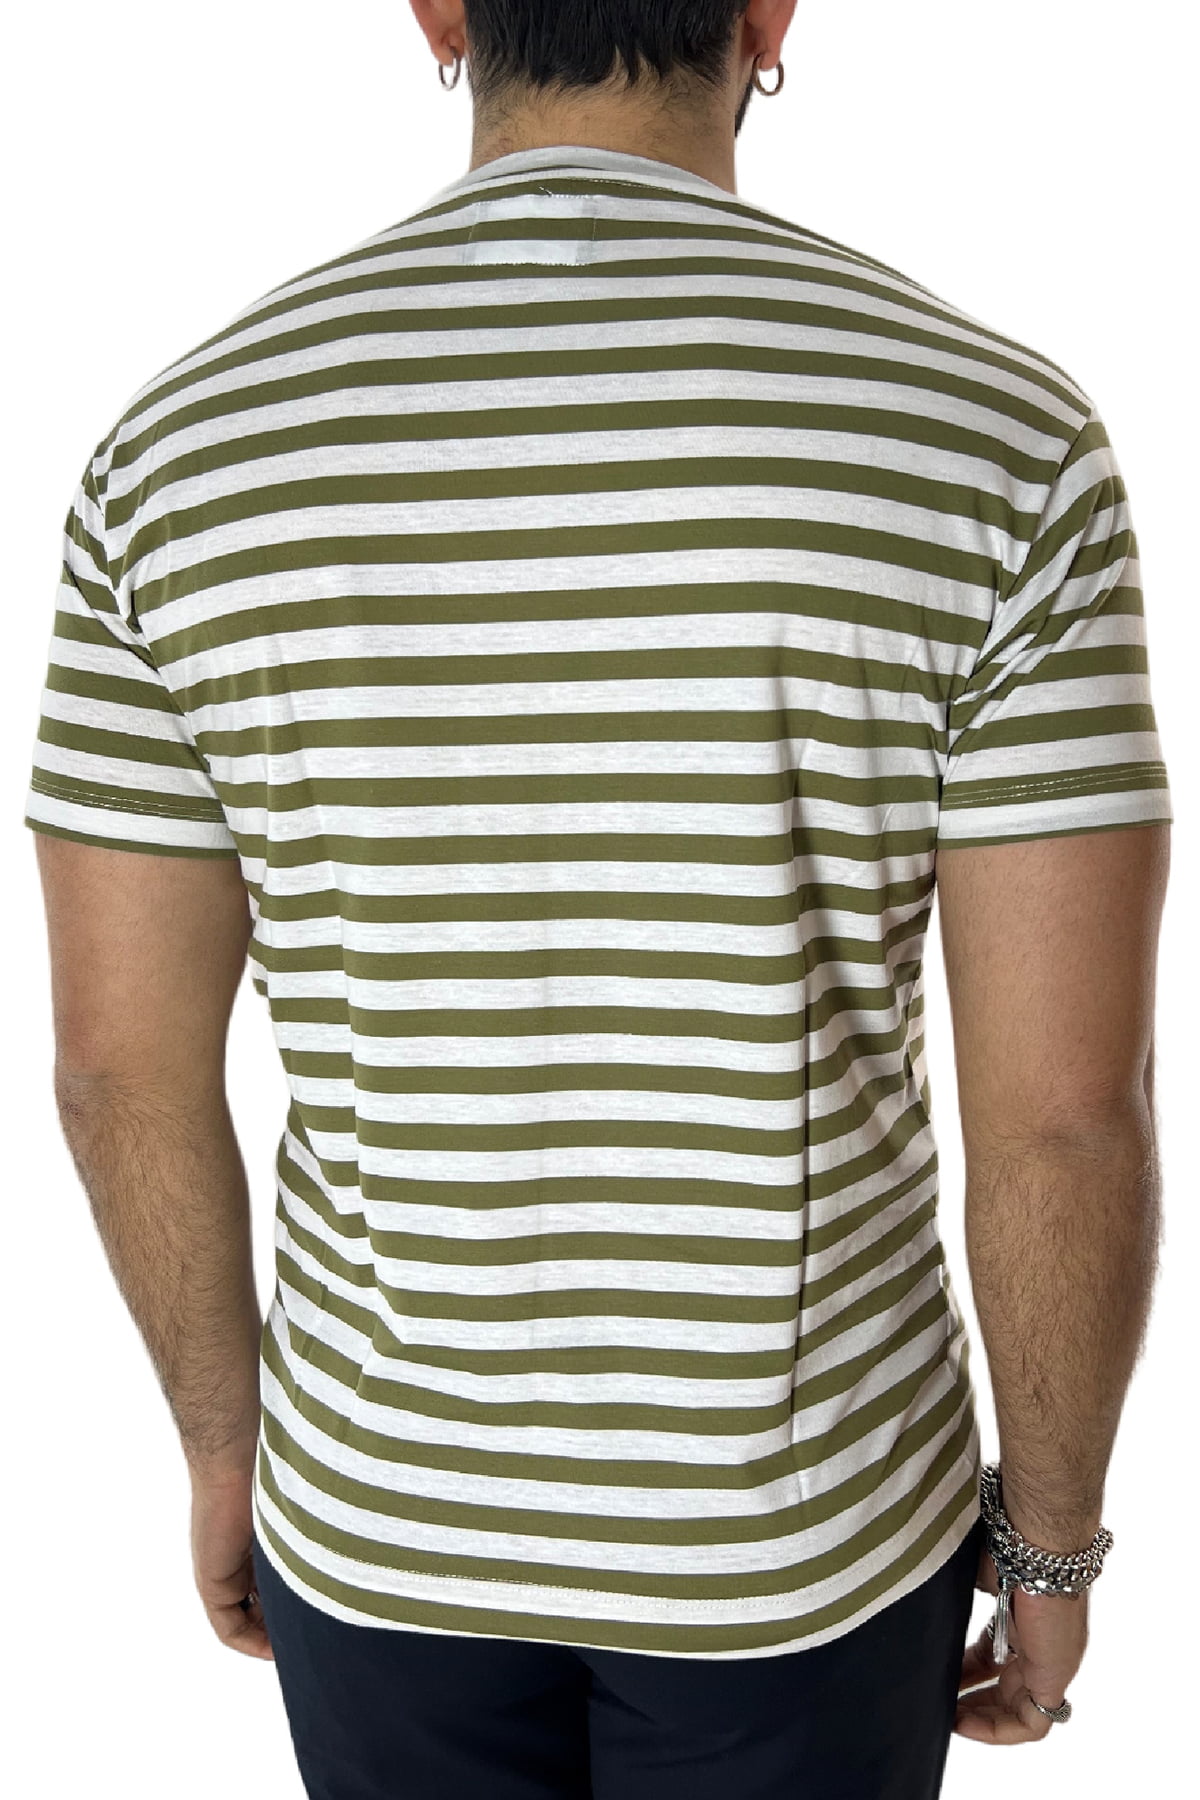 T-shirt scollo a v da uomo verde rigata mezze maniche slim fit made in italy